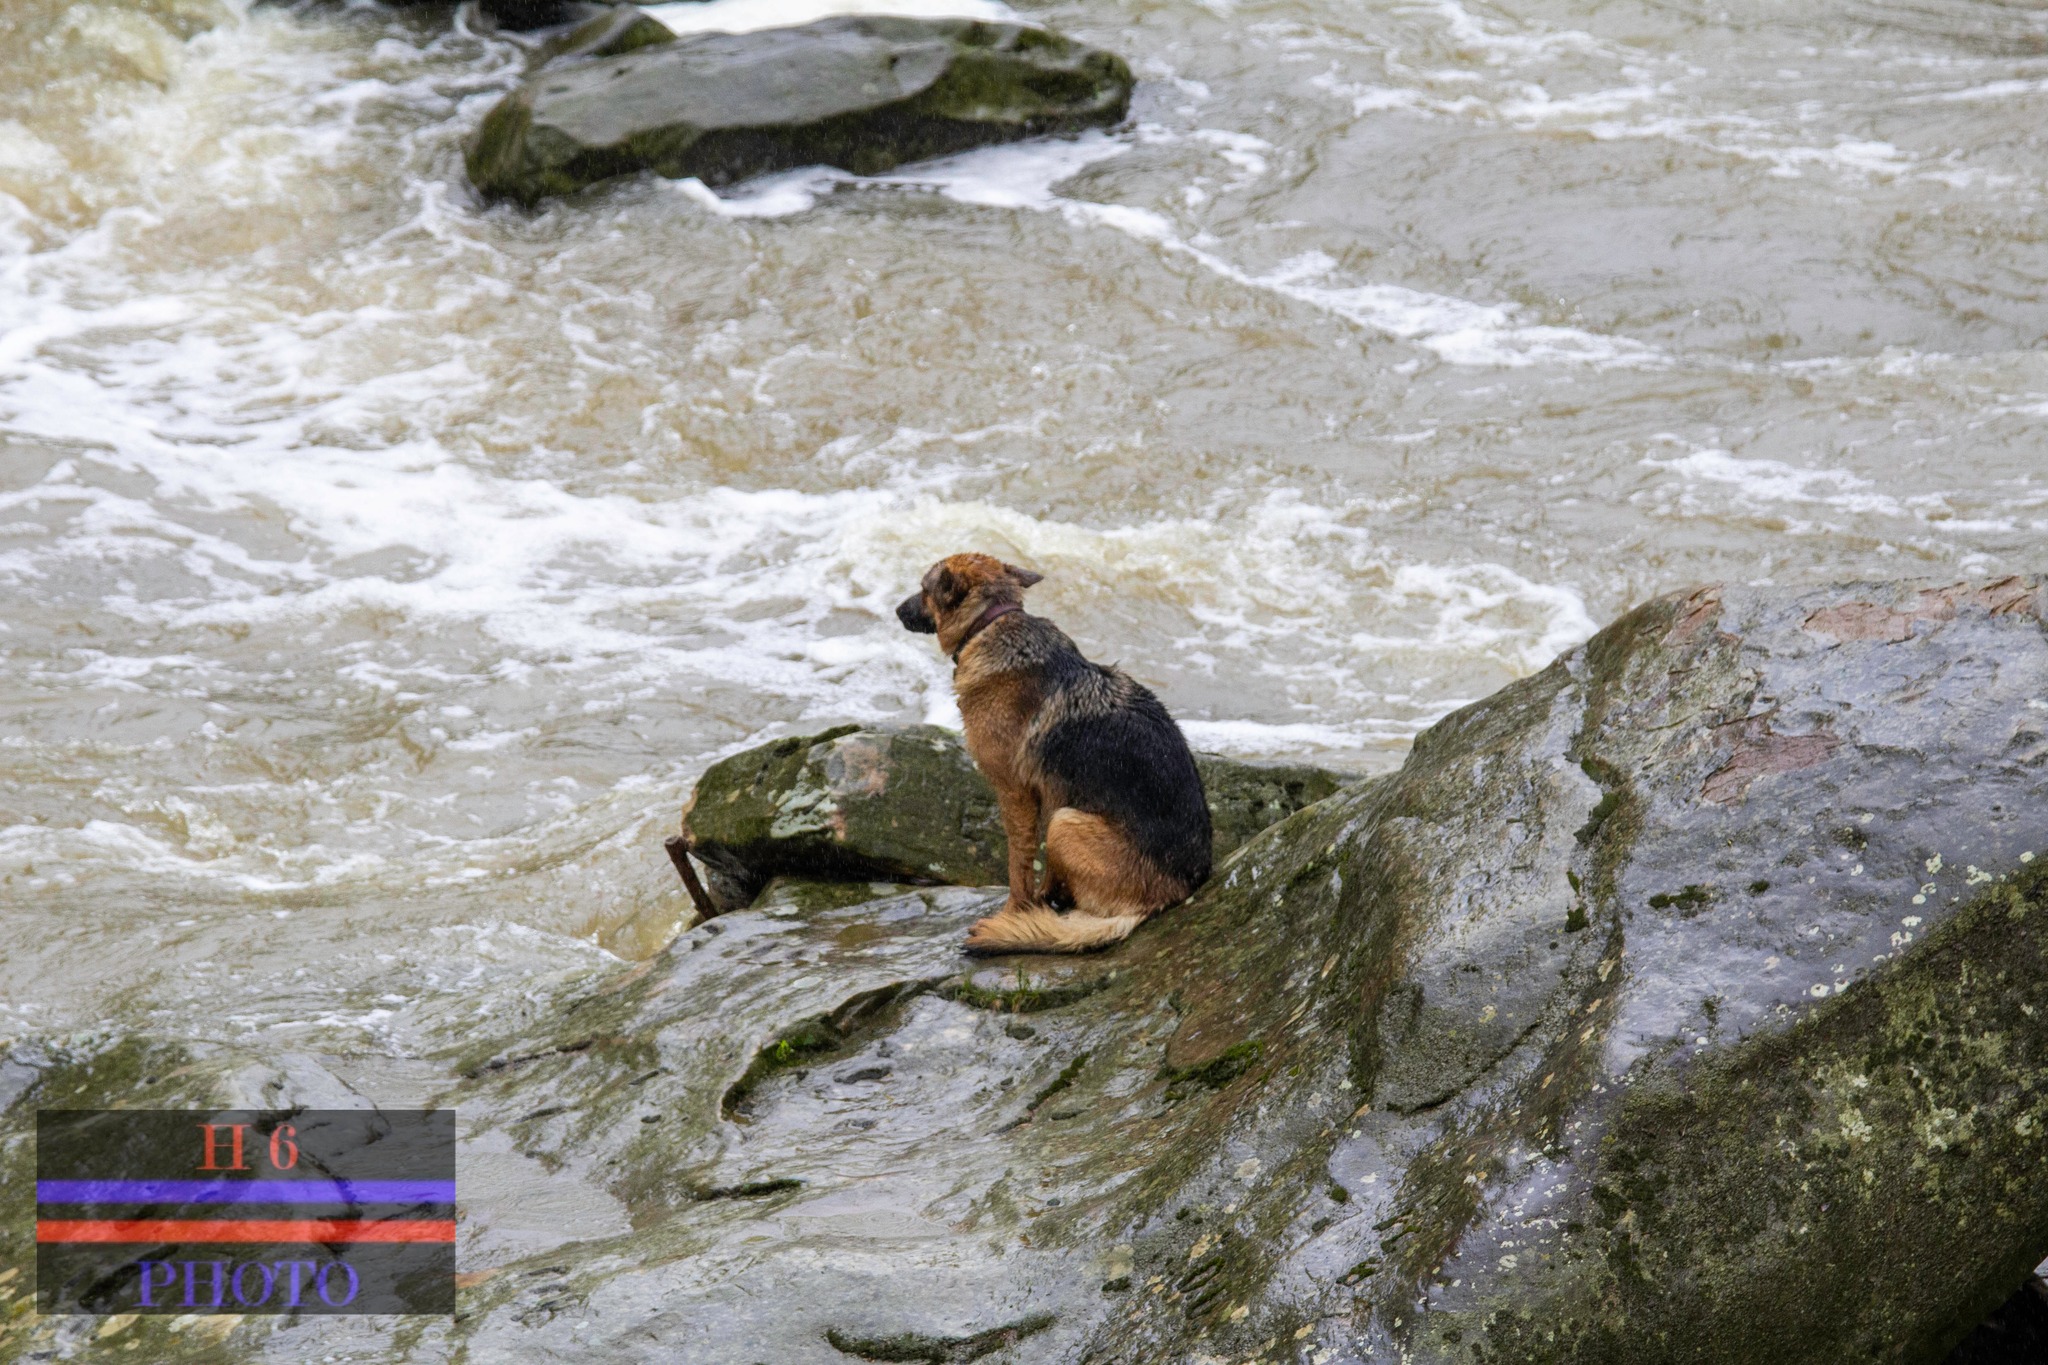 Hund mitten im Fluss auf einem Felsen gestrandet